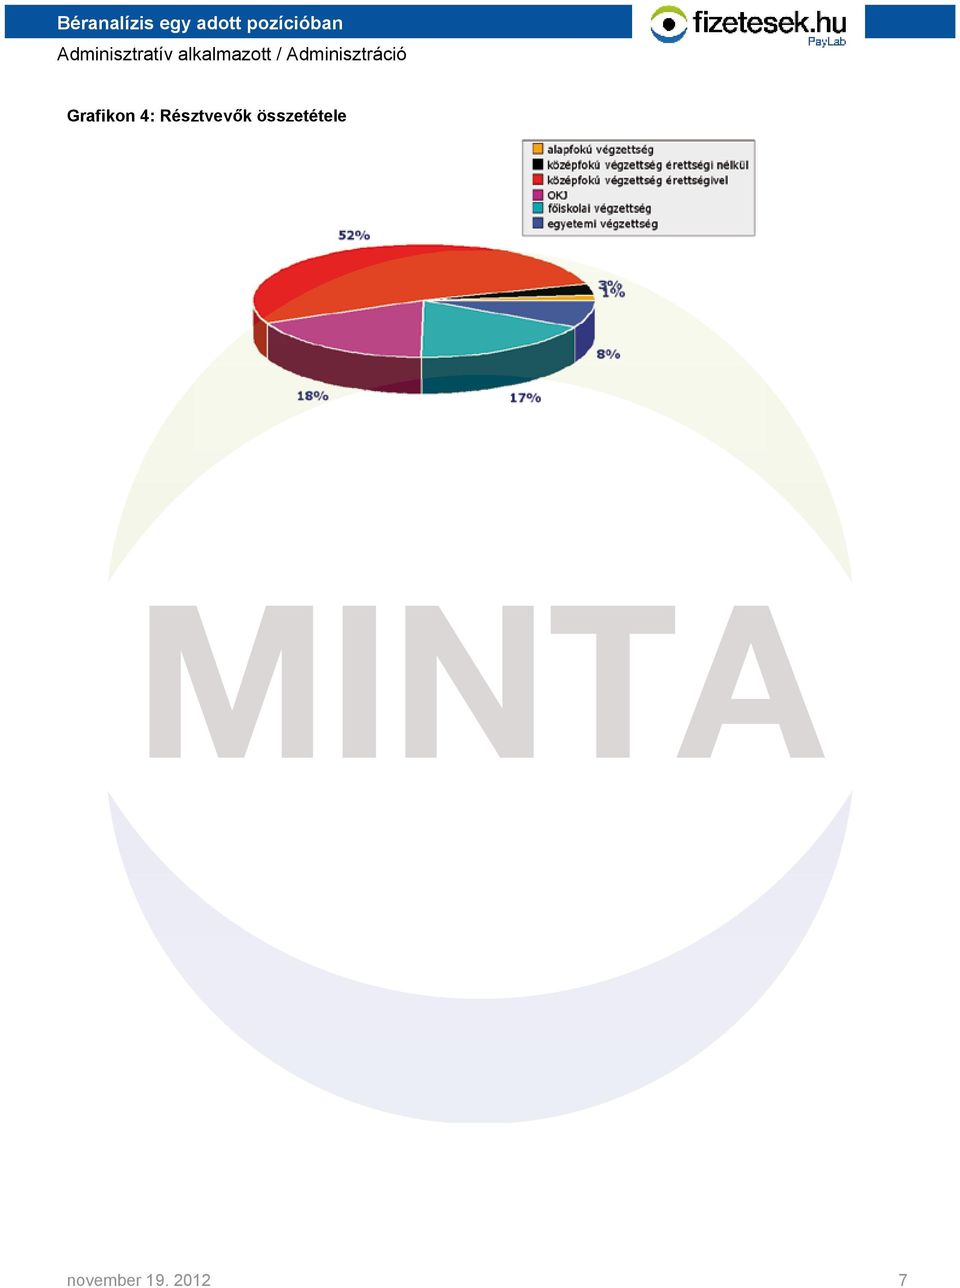 MINTA. Béranalízis egy adott pozícióban. Adminisztratív alkalmazott  Adminisztráció - PDF Free Download